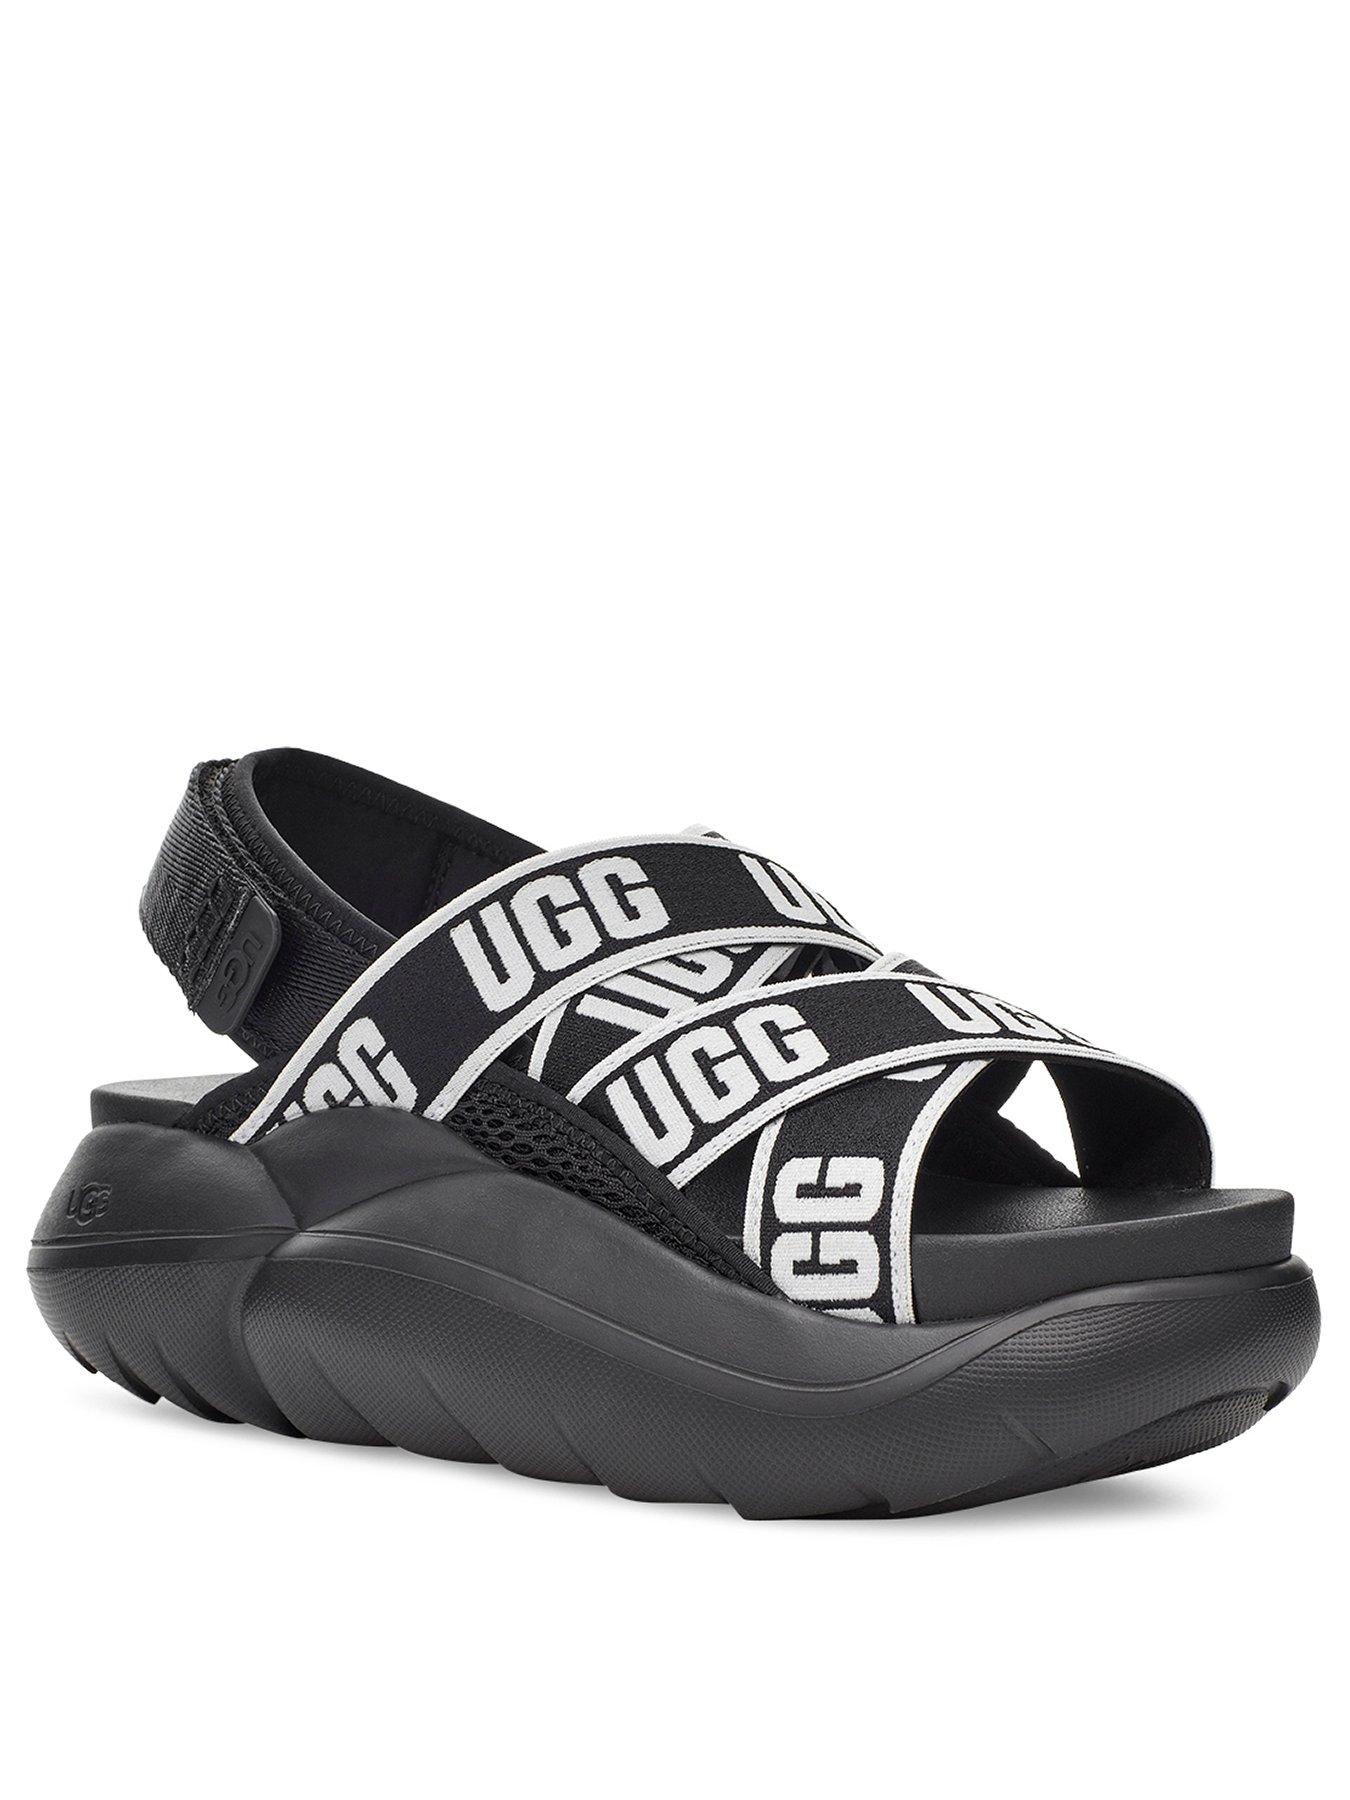 uggs shoes uk